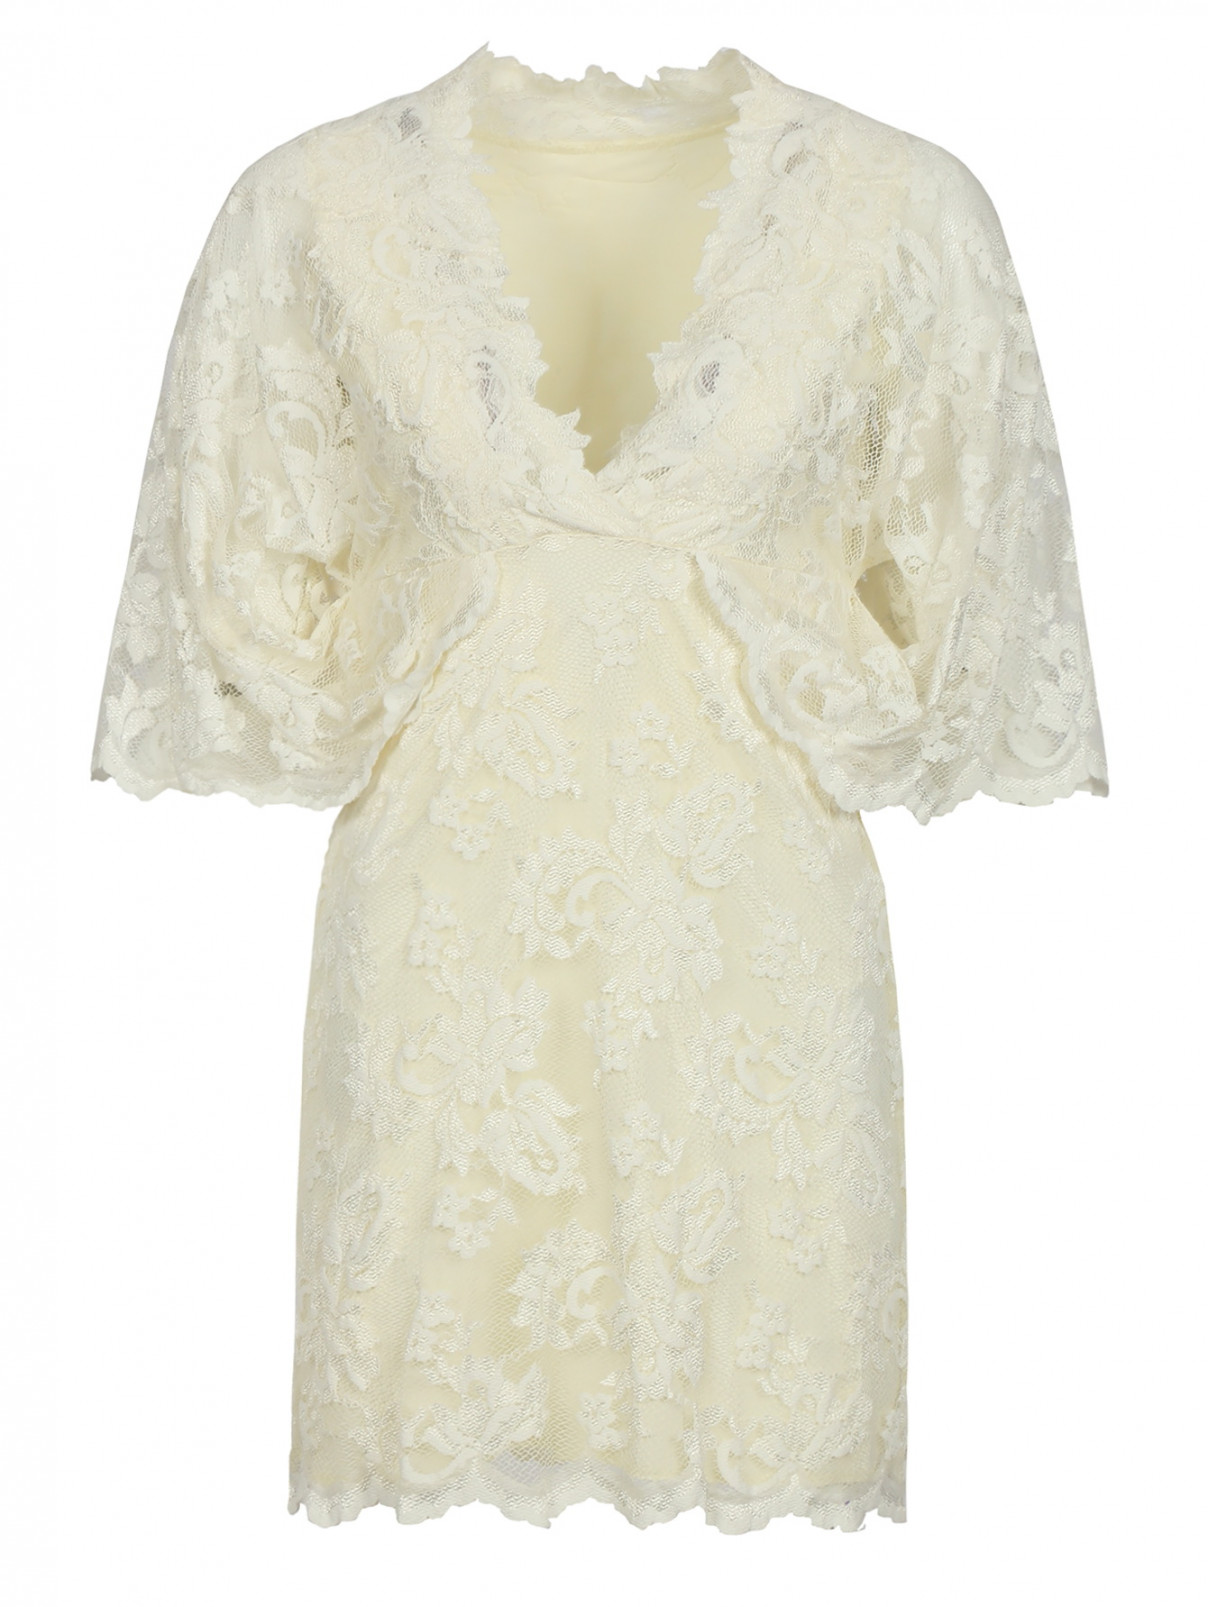 Кружевное платье-мини Olvi's  –  Общий вид  – Цвет:  Белый